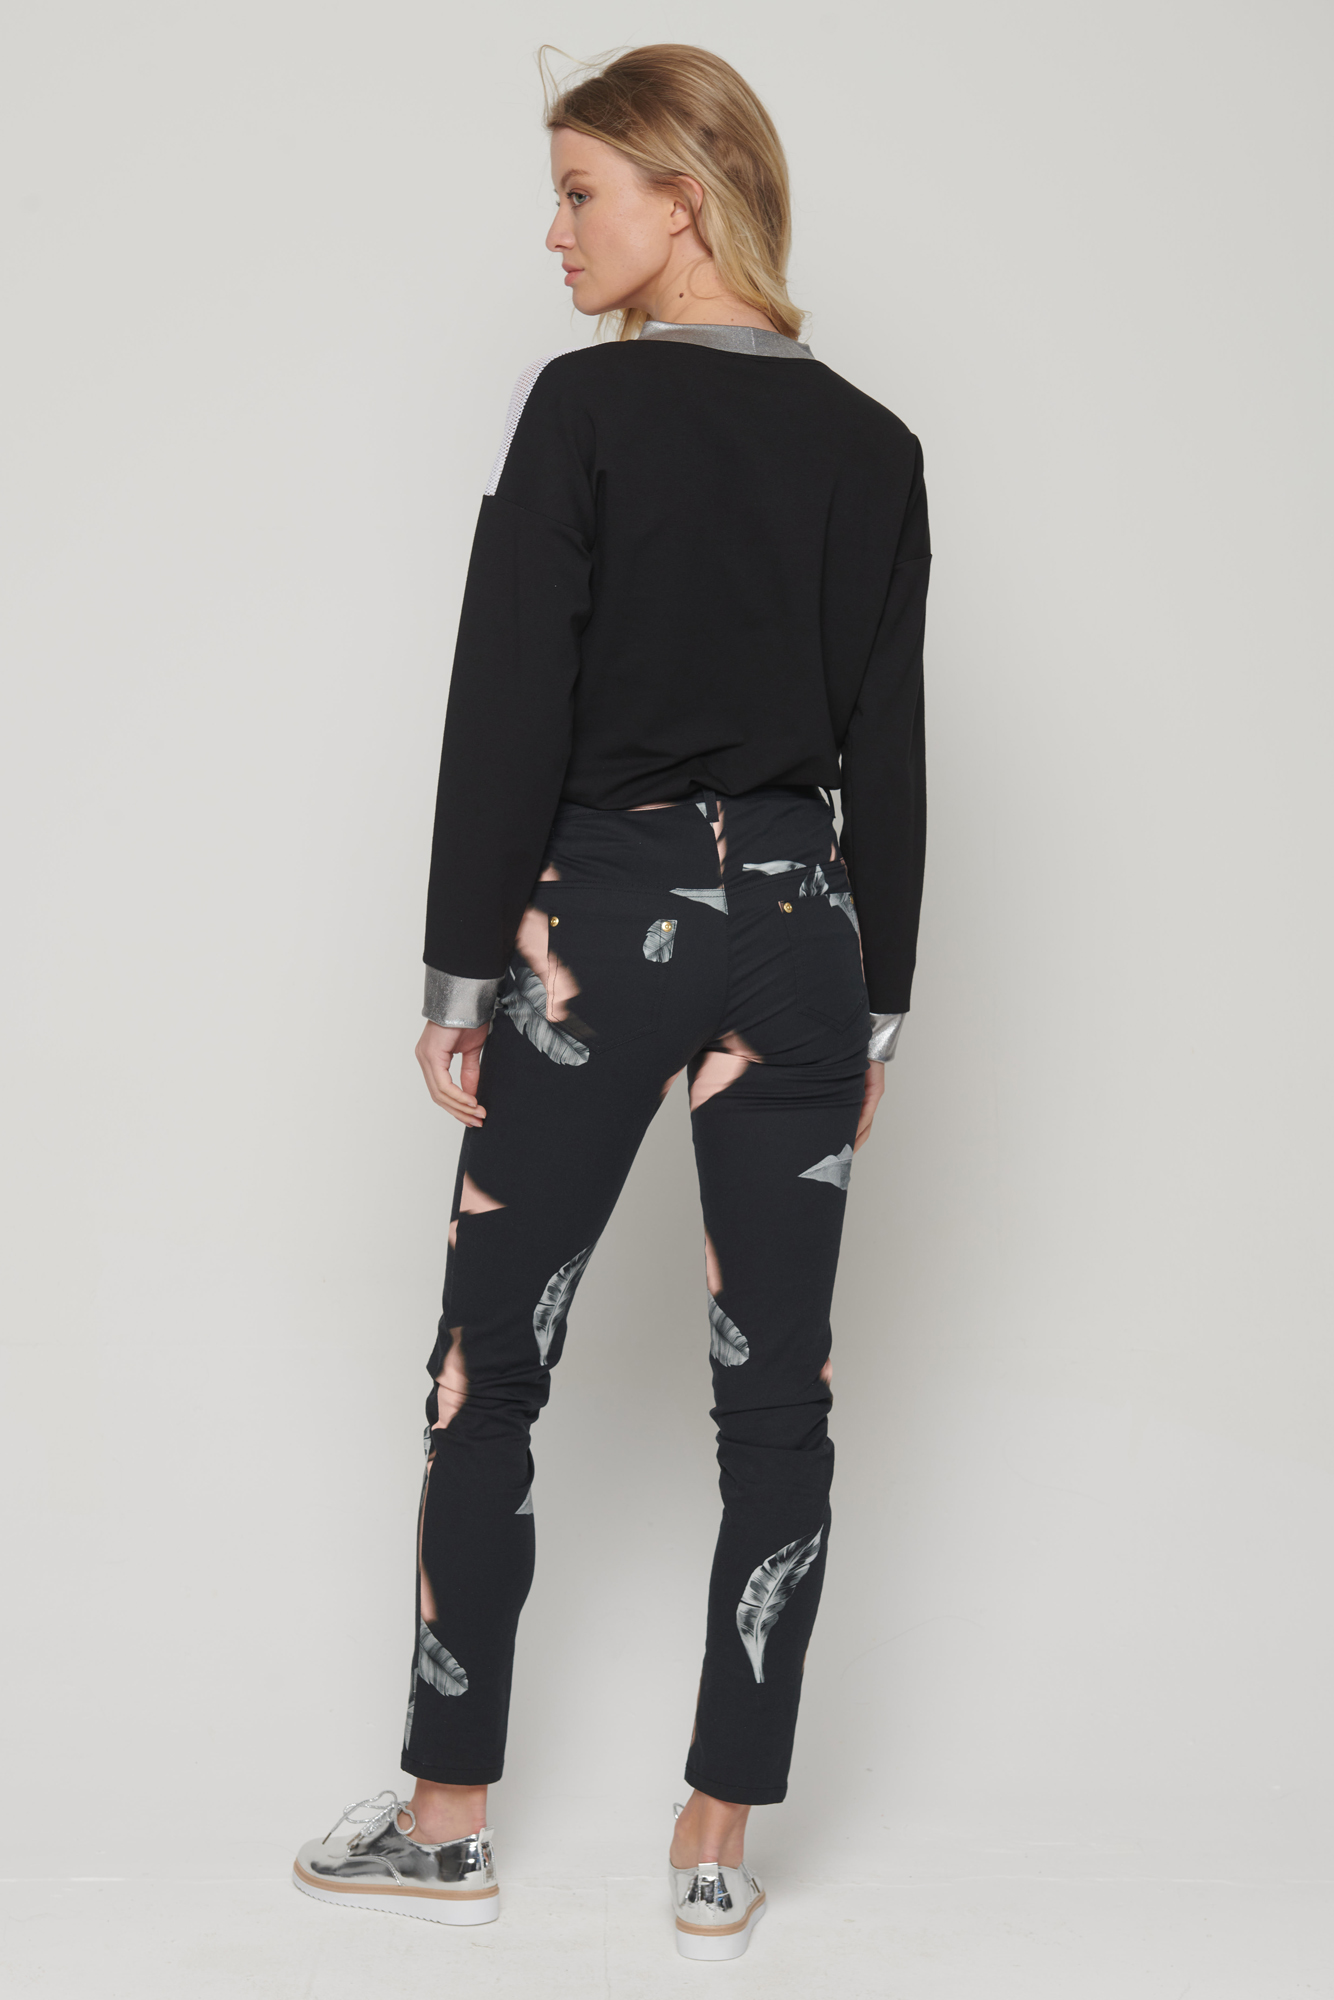 náhled 421-691 kalhoty džínového střihu